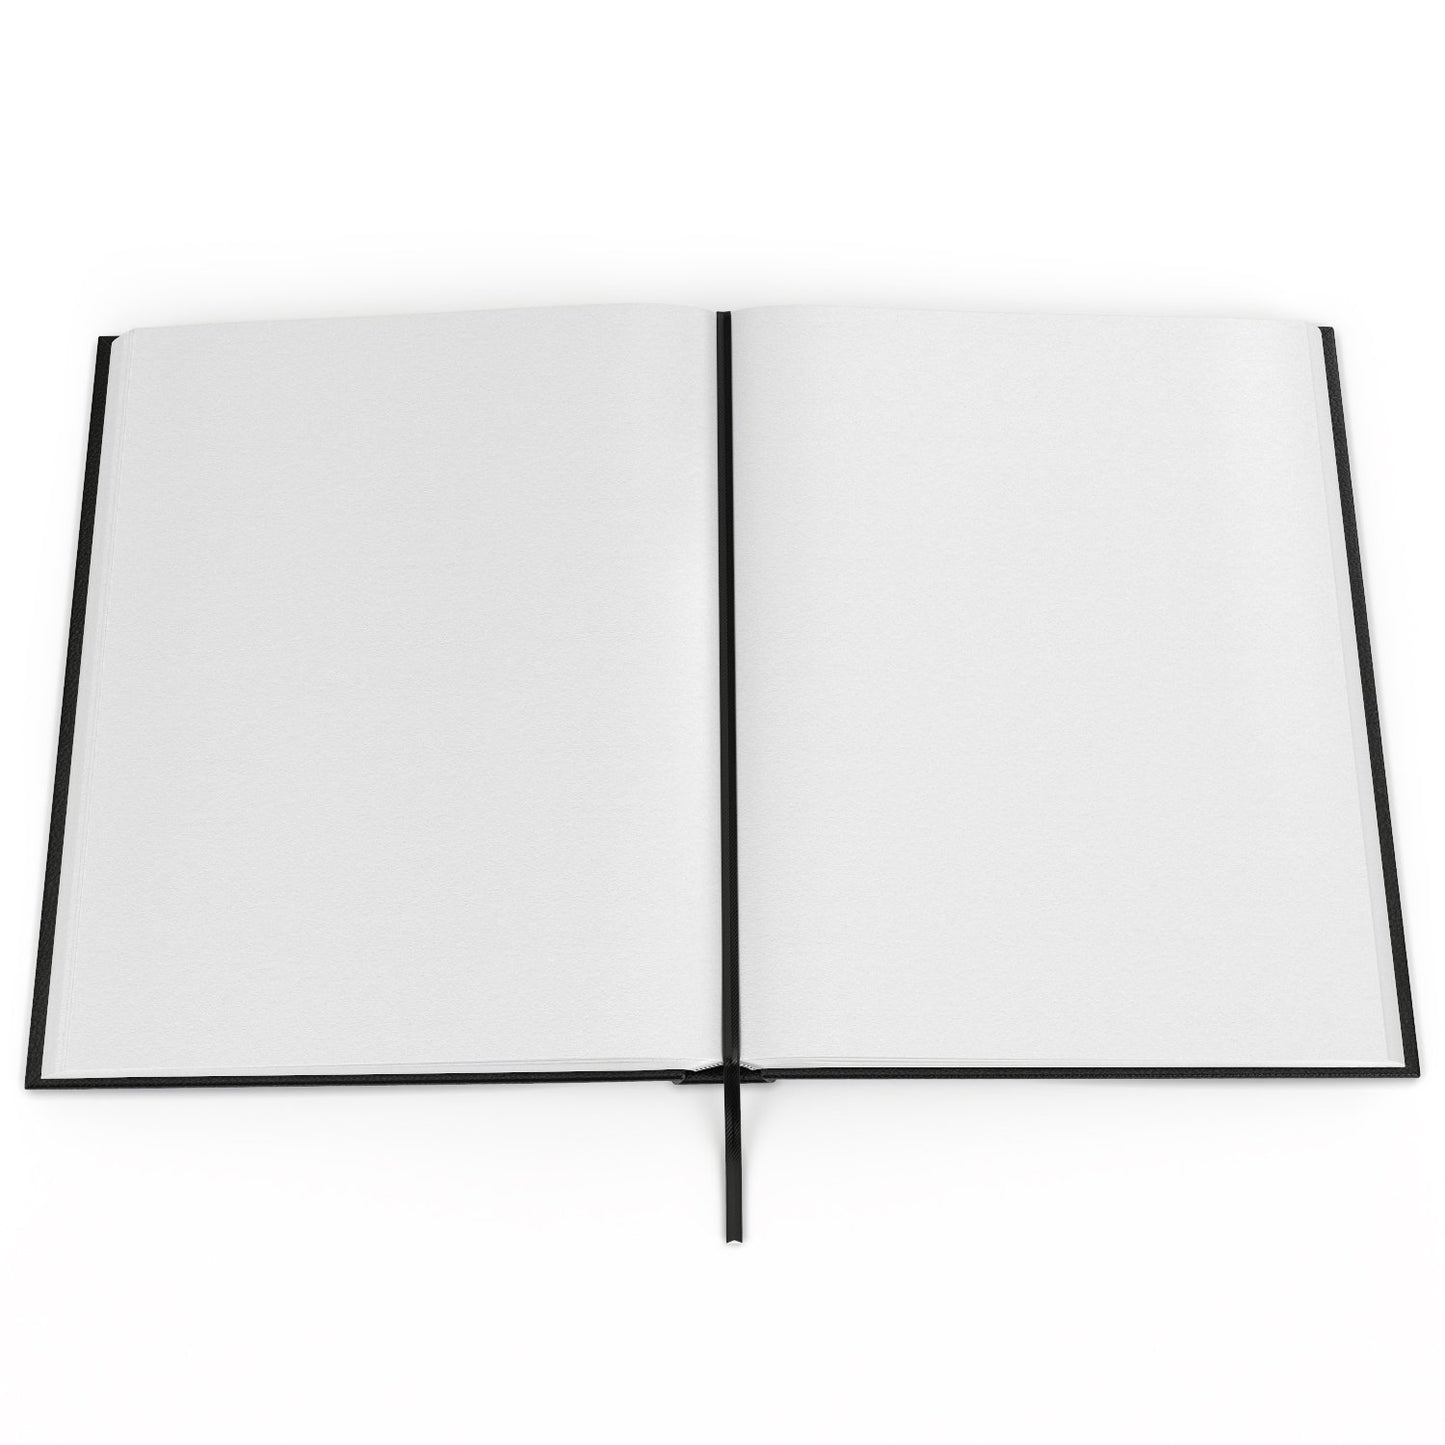 Sketchbook, Hardbound, 8.5" x 11", 110 Sheets